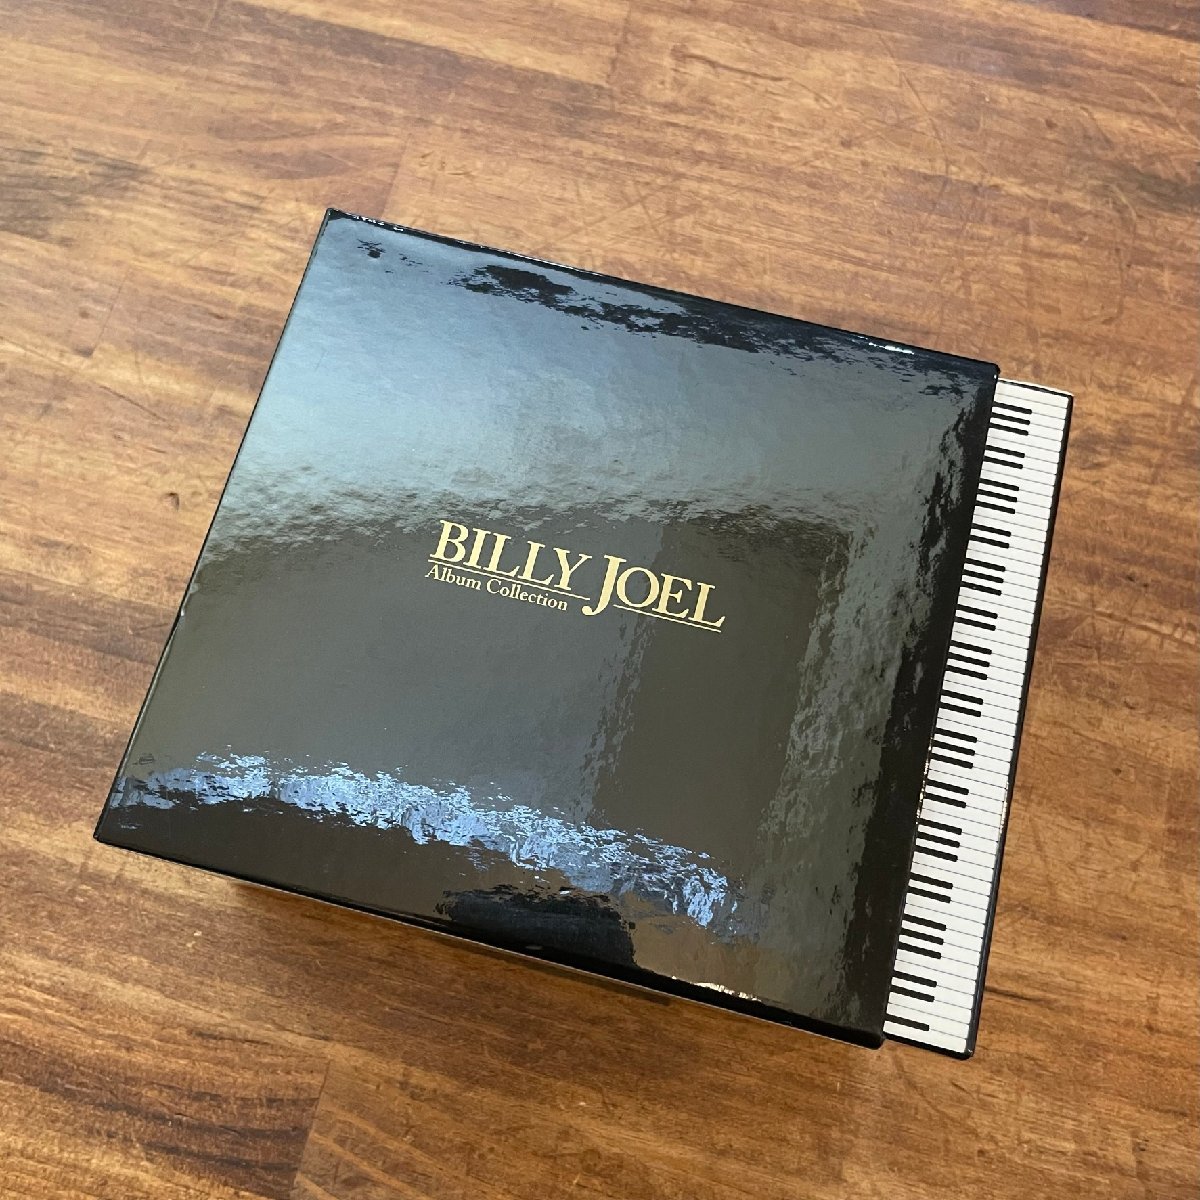 Yahoo!オークション -「billy joel box」(CD) の落札相場・落札価格